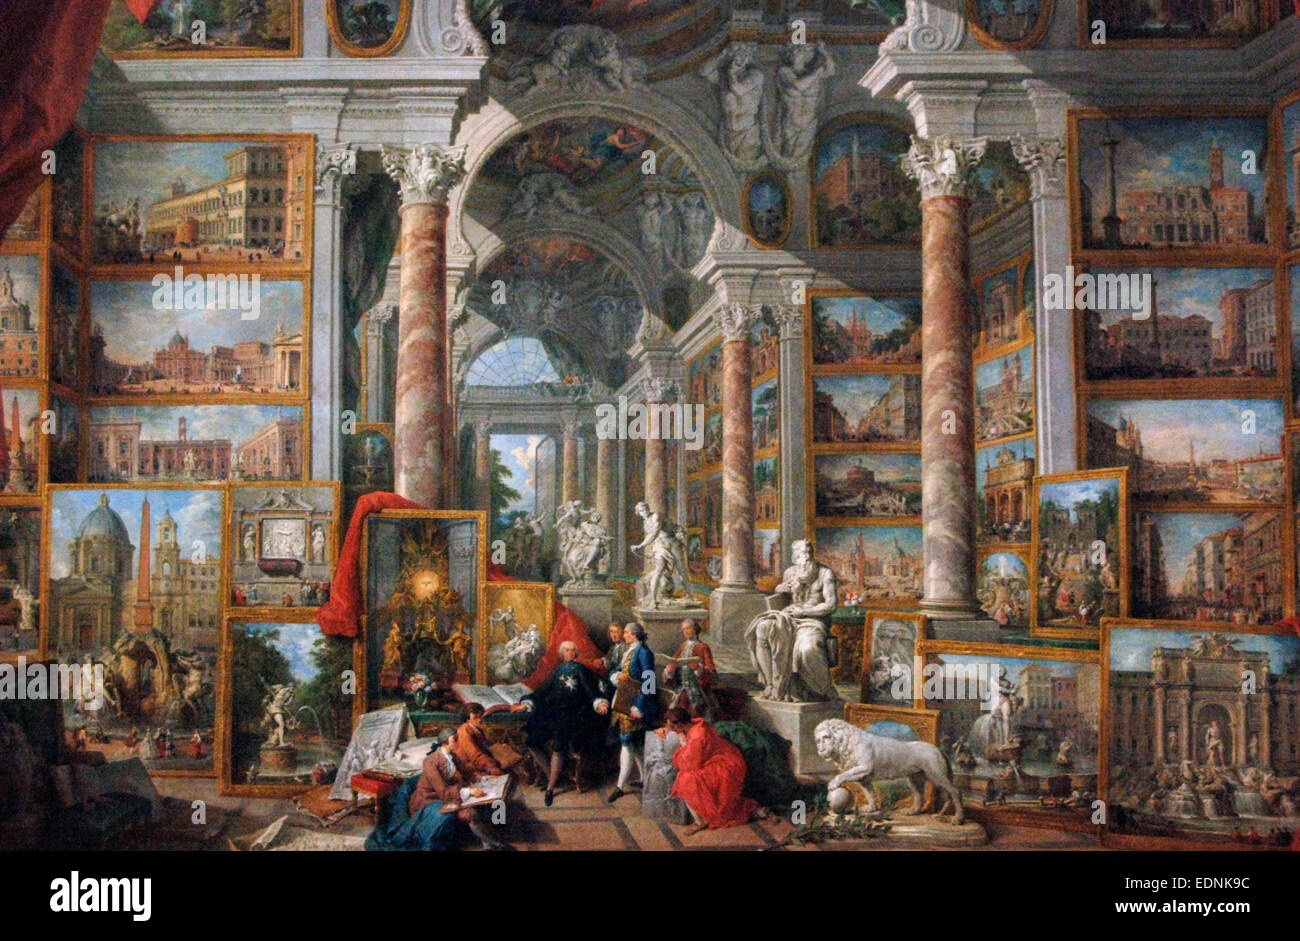 Giovanni Paolo Panini (1691-1765). Pintor italiano. Galería de imágenes con vistas de la Roma moderna. 1758. Museo del Louvre. París. Francia. Foto de stock